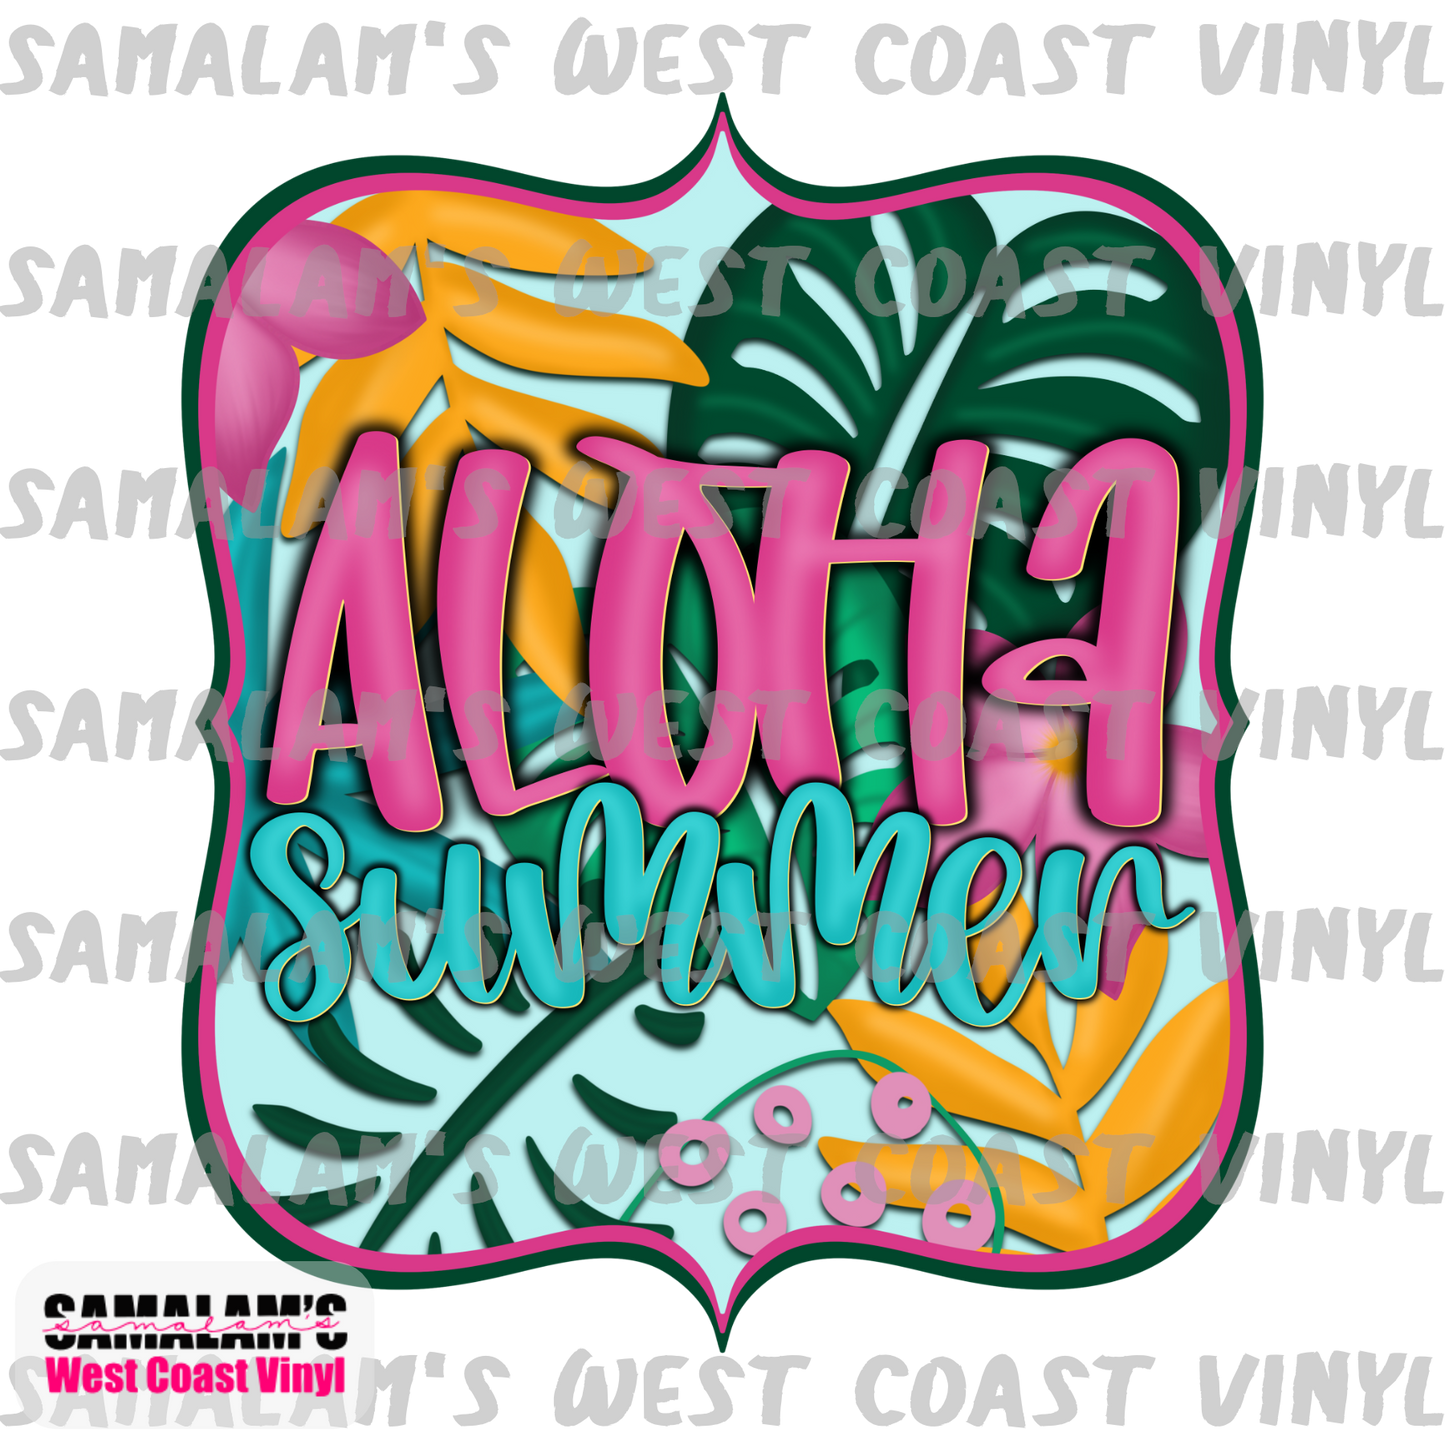 Aloha Summer - Clear Cast Decal